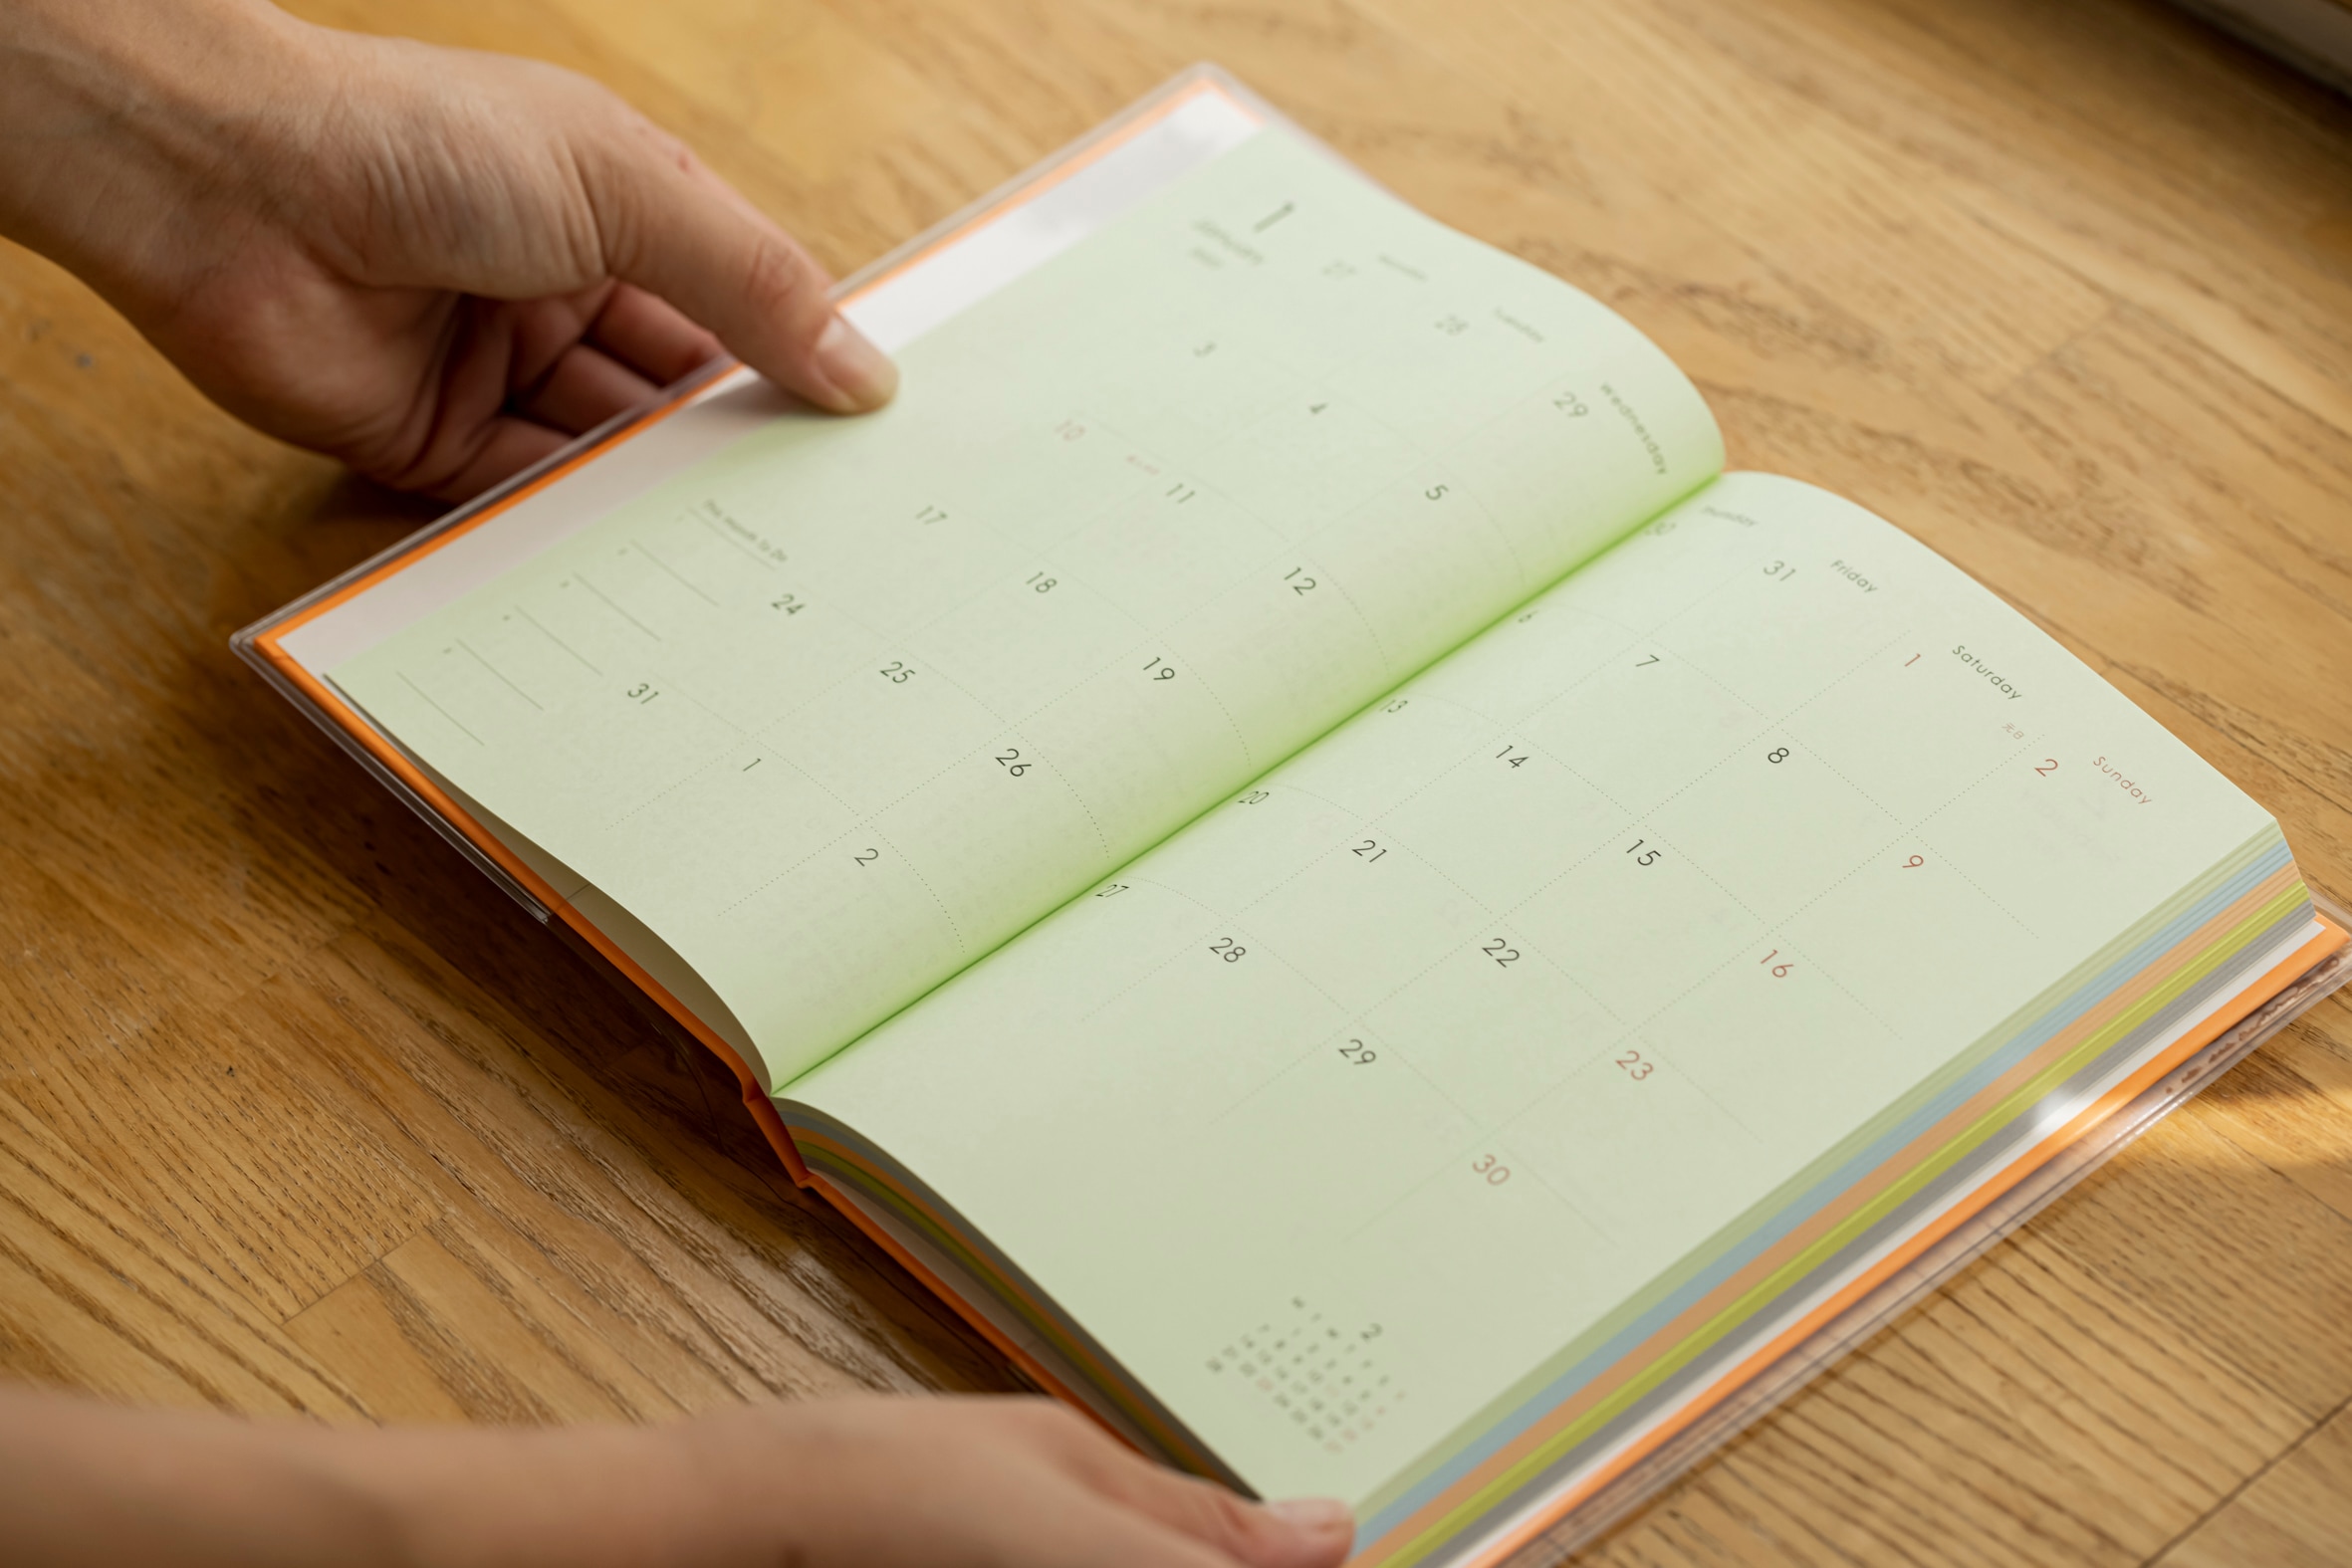 中の紙が紫・緑・オレンジなどカラフルなスケジュール帳,石田製本の「booco diary」